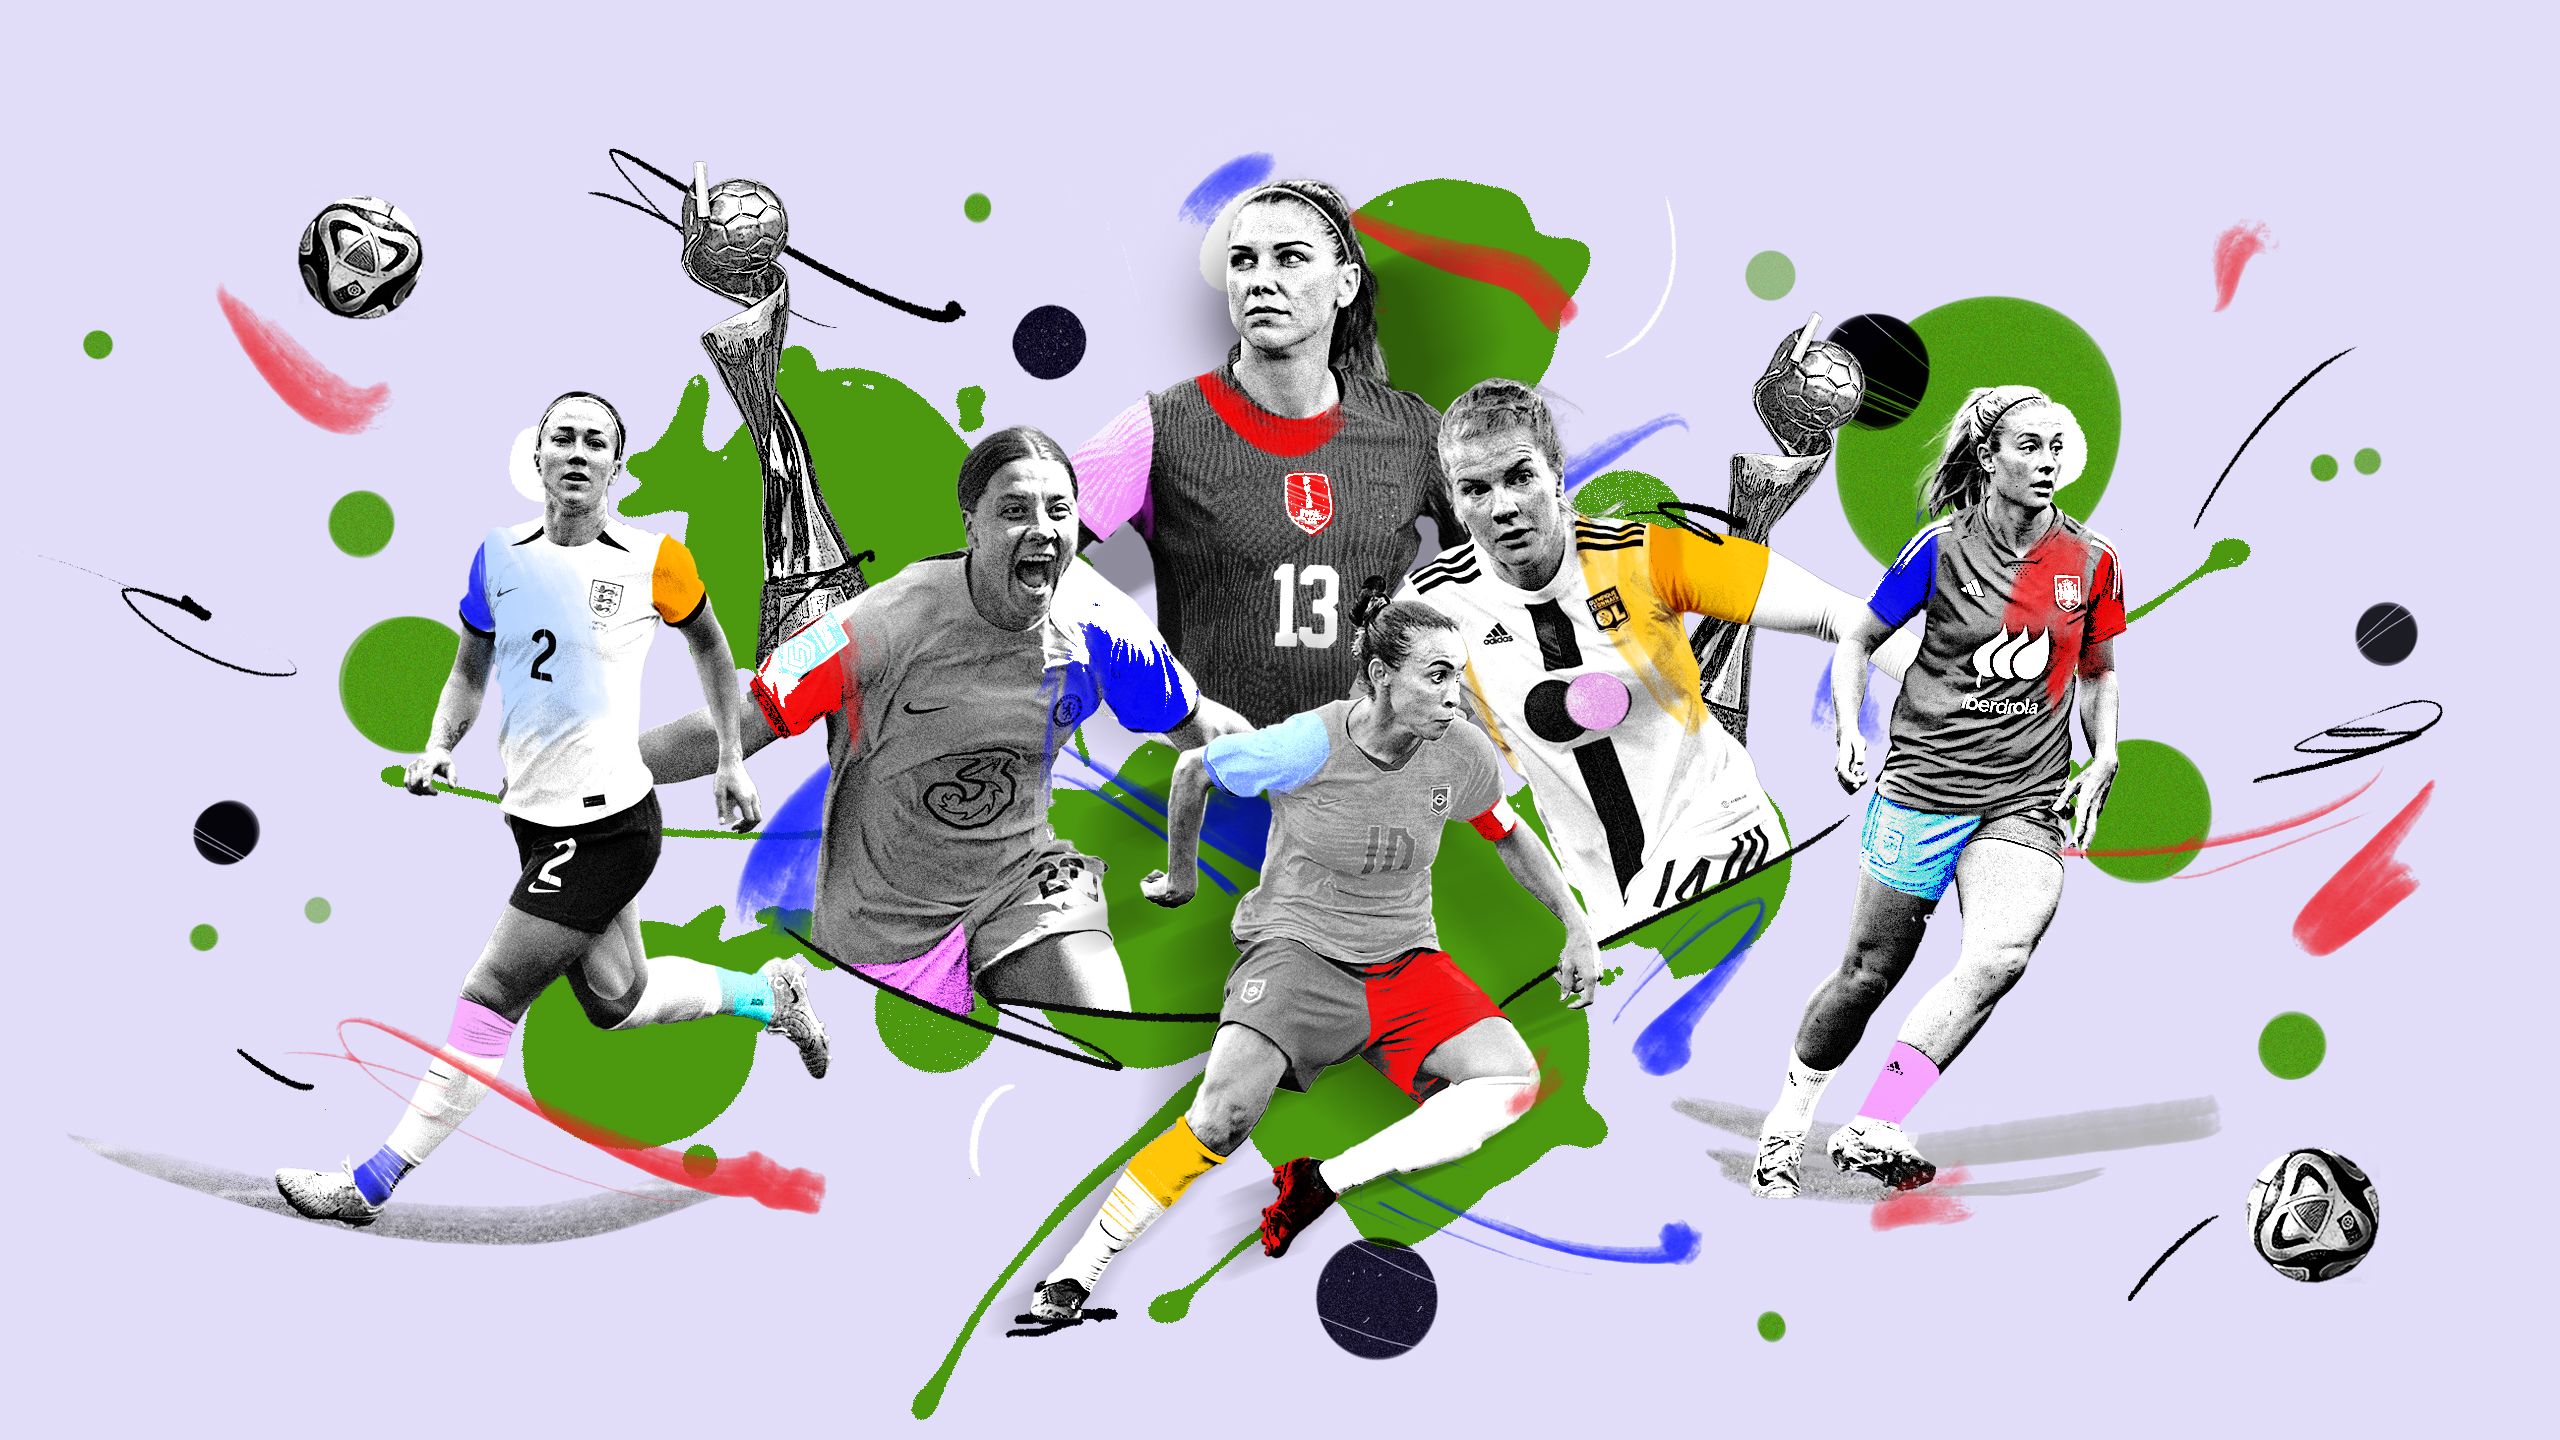 Una guida visiva alla Coppa del Mondo femminile